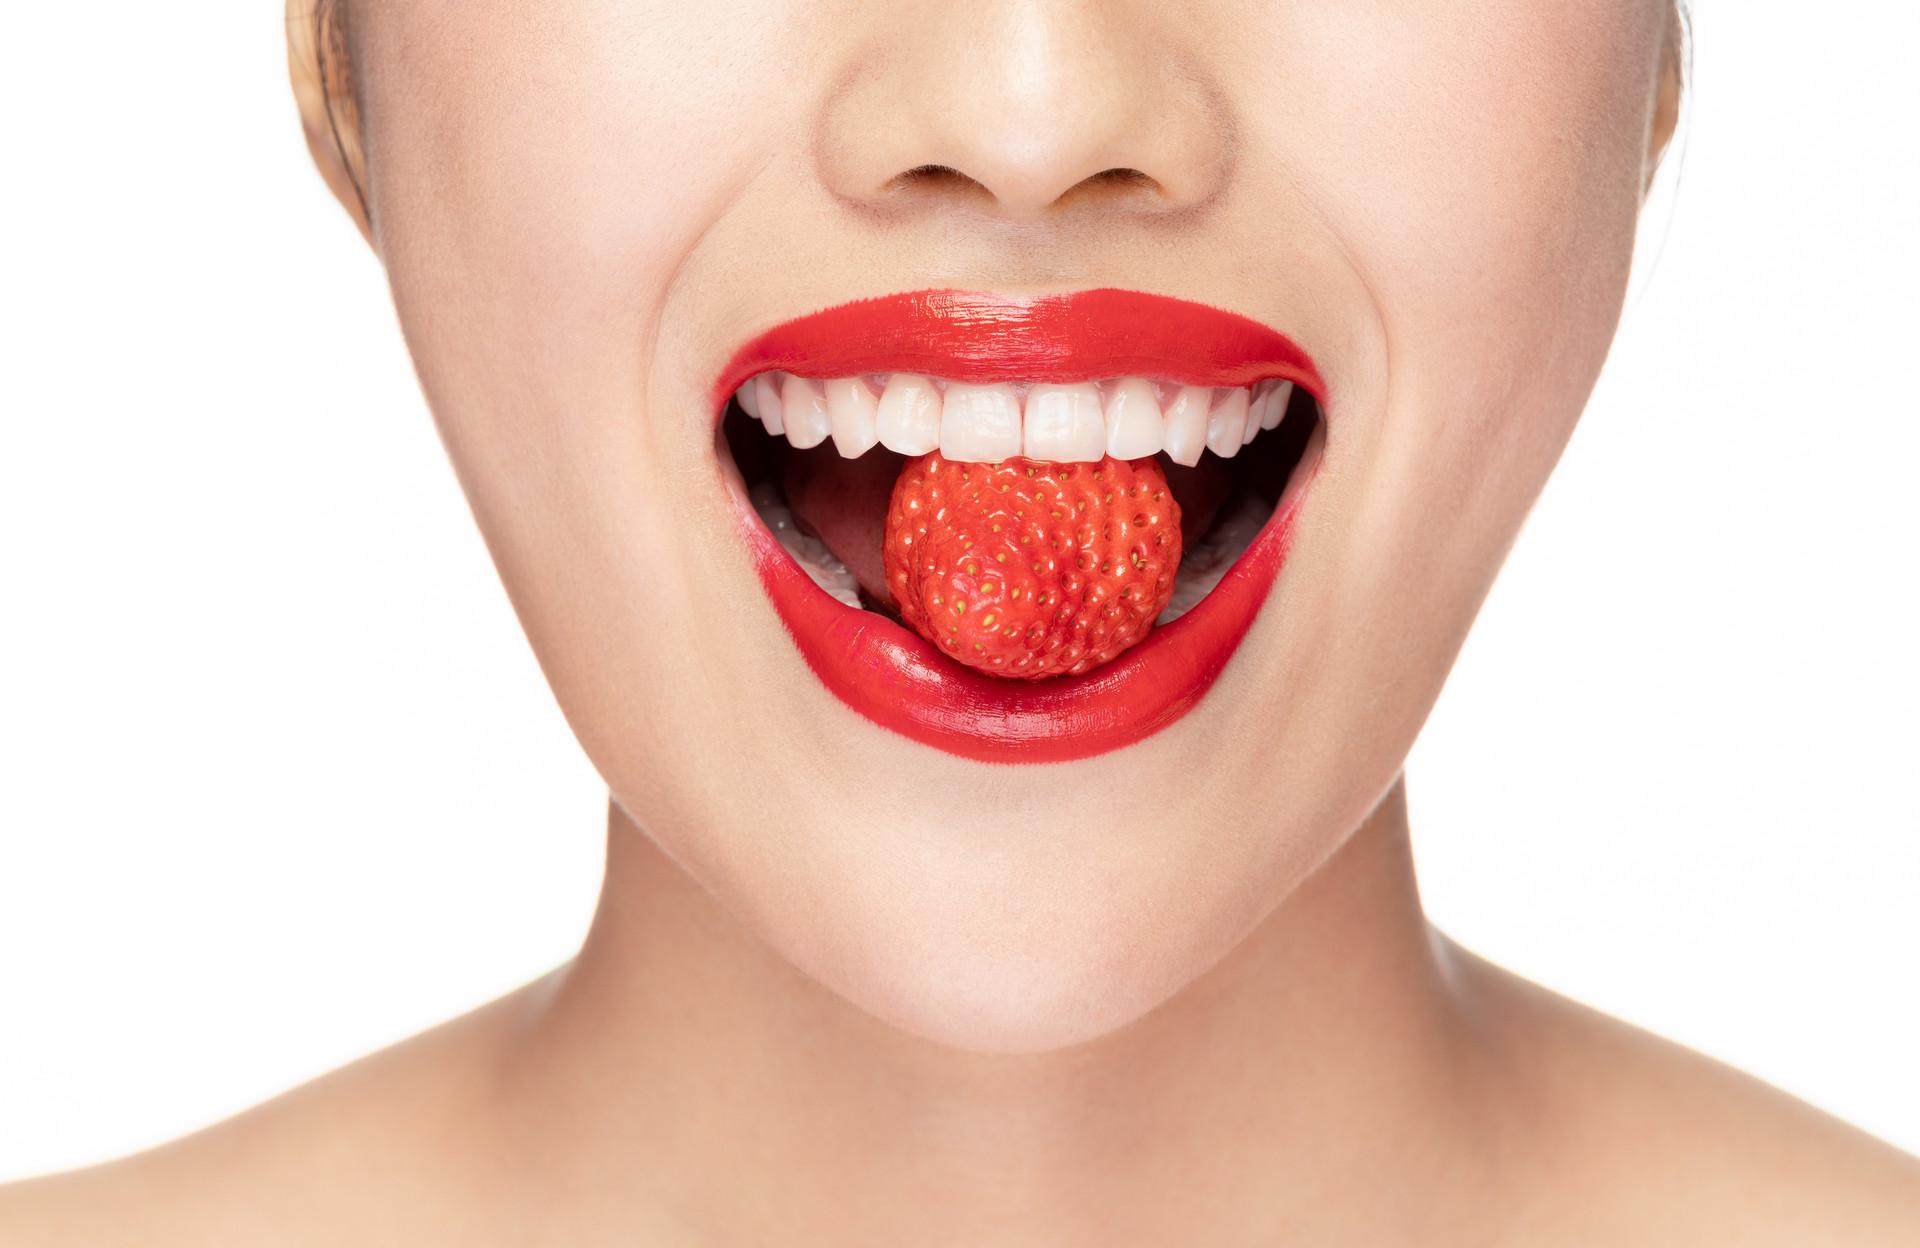 嘴唇干裂脱皮是什么原因造成的 9种错误行为引发嘴唇问题